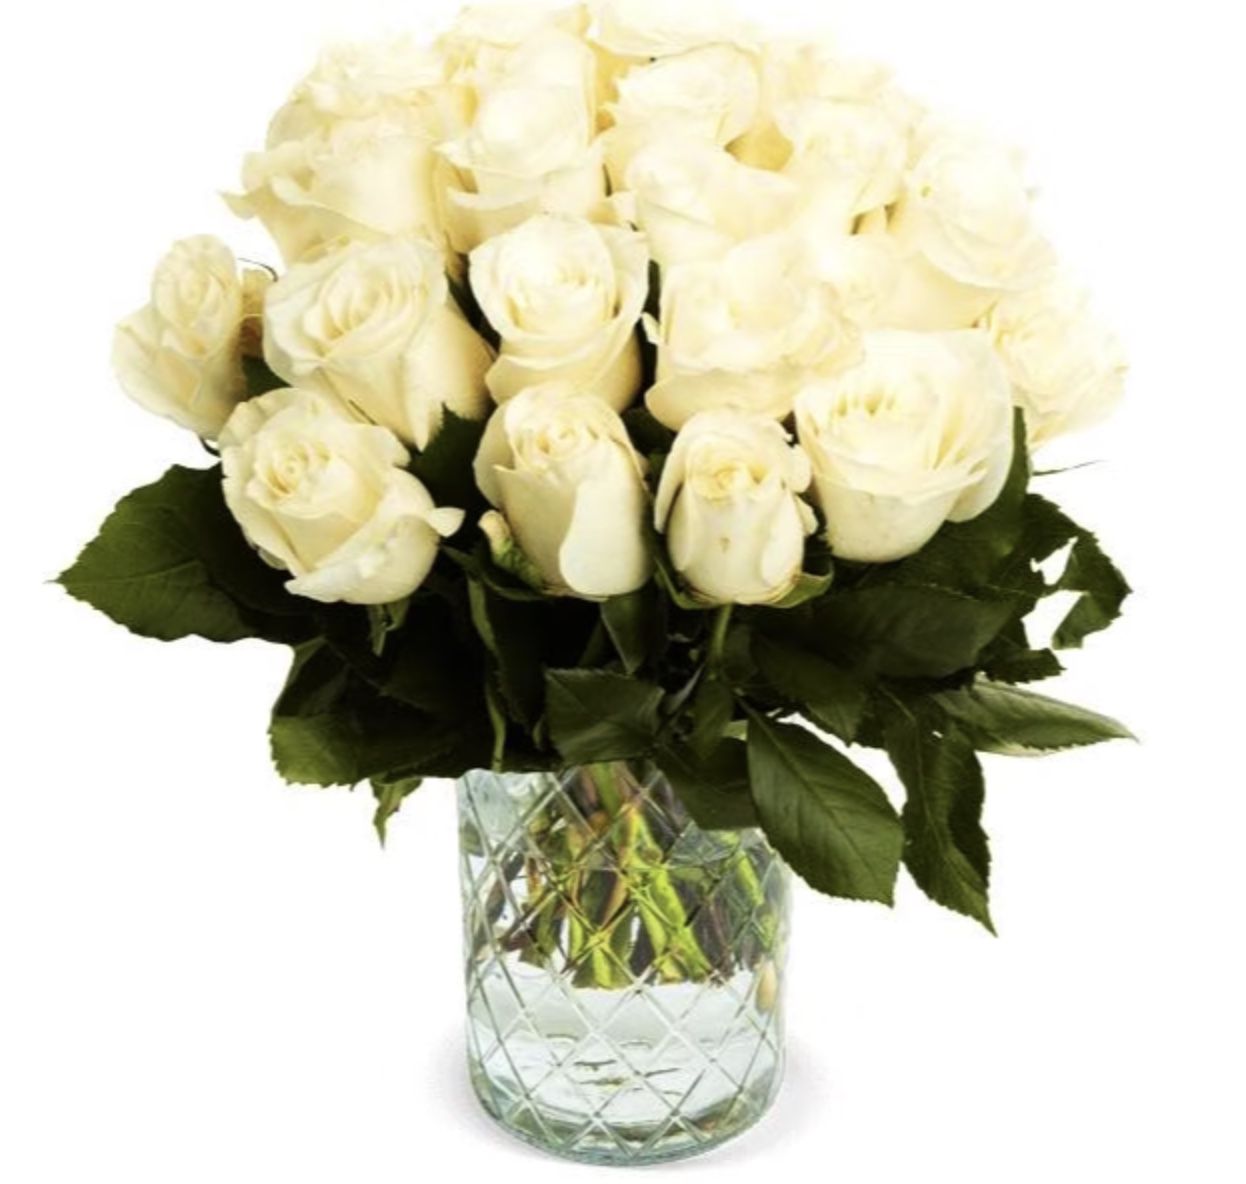 50 weiße Rosen mit 40cm für 25,98€ inkl. Versand